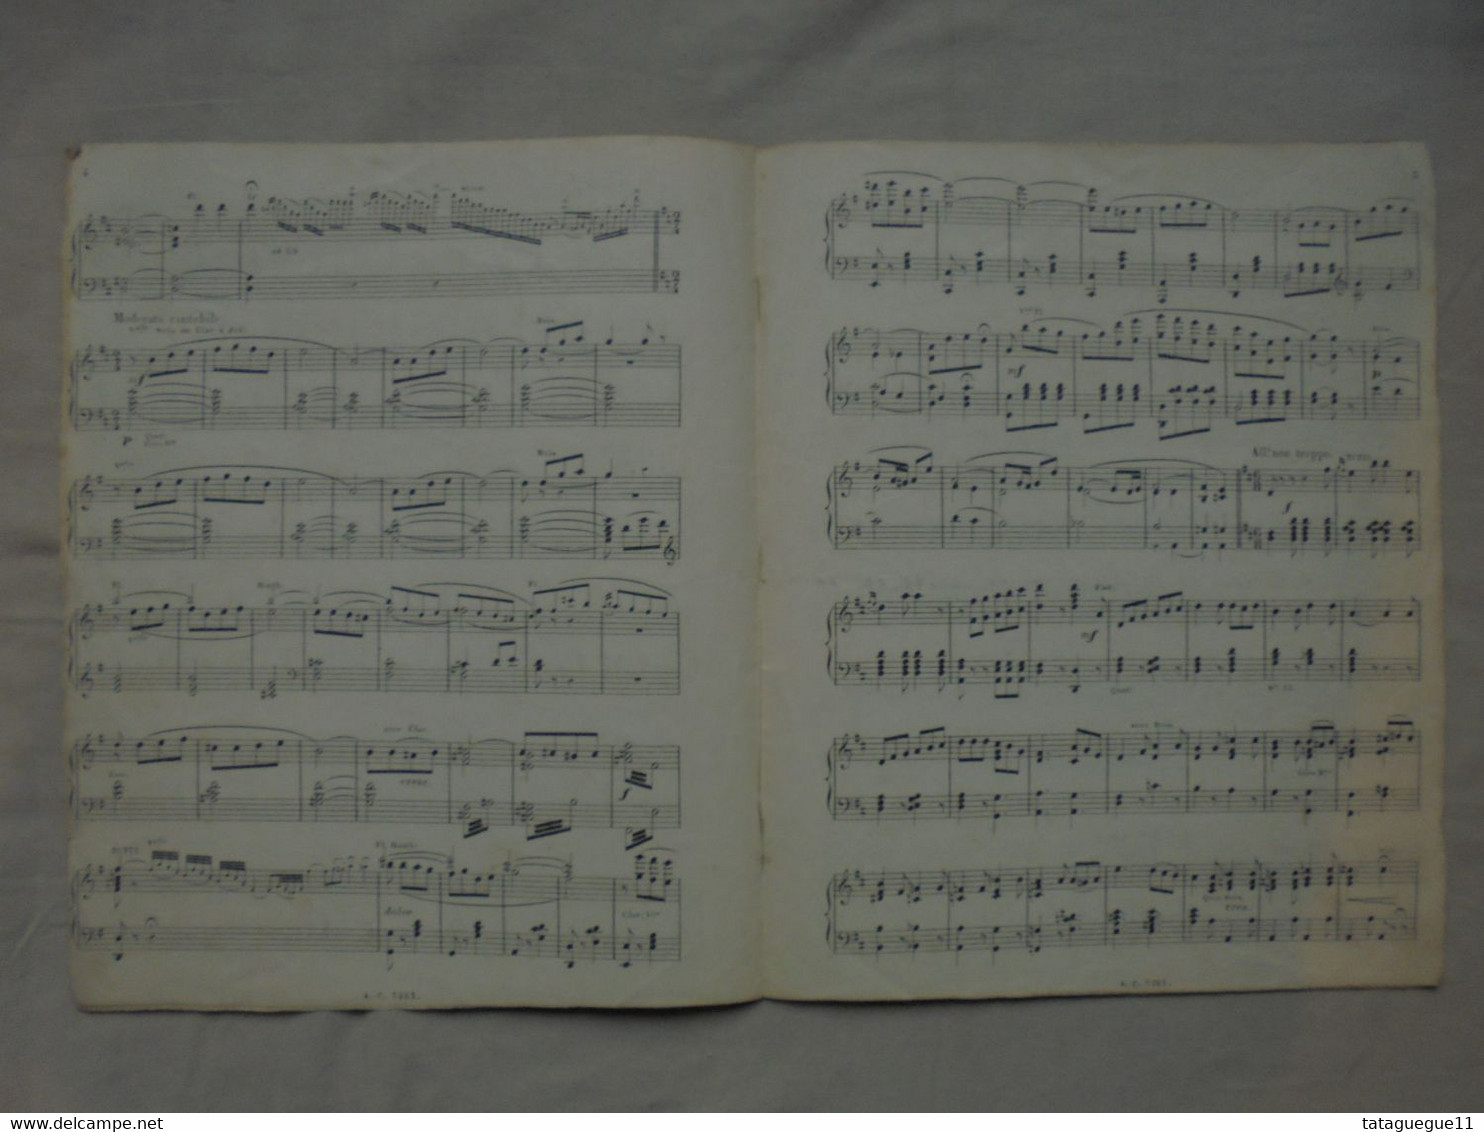 Ancien - Partition Les Mousquetaires Au Couvent Piano Editions Choudens - Klavierinstrumenten